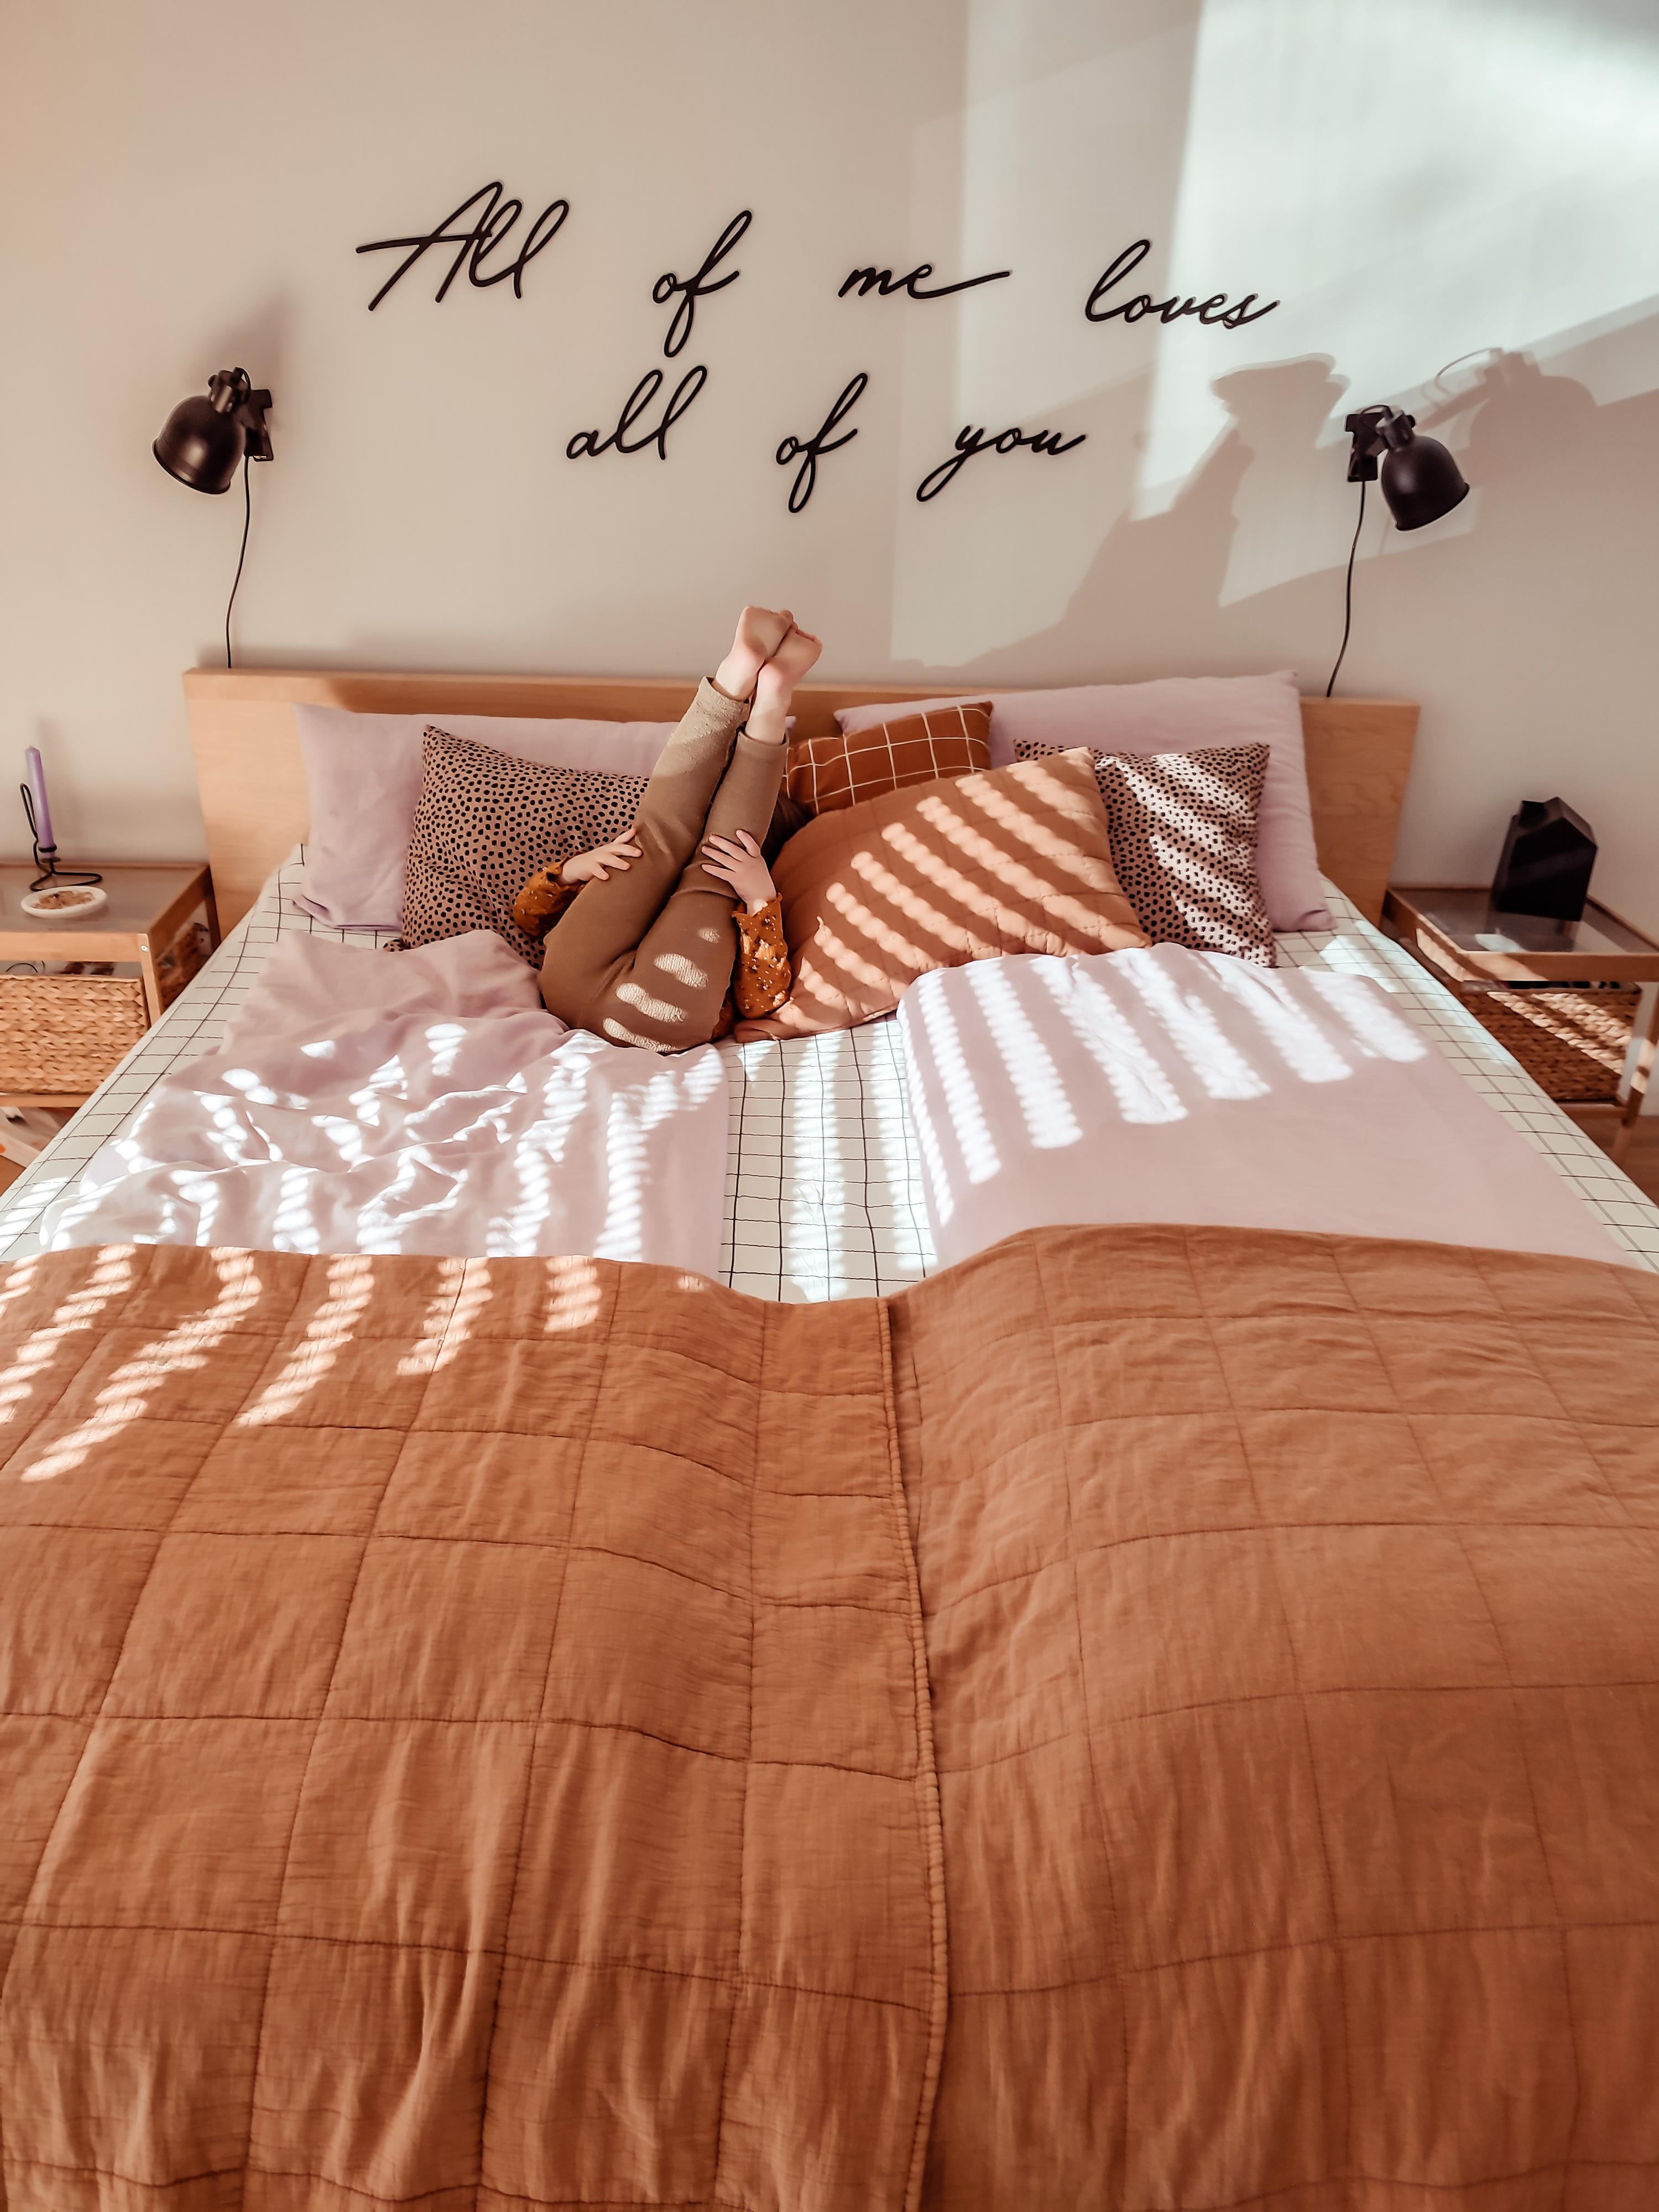 Endlich Sonne und gleich gute Laune 🤗
#schlafzimmer #bedroom #sunshine #bettwäsche #wallart #walldecor 